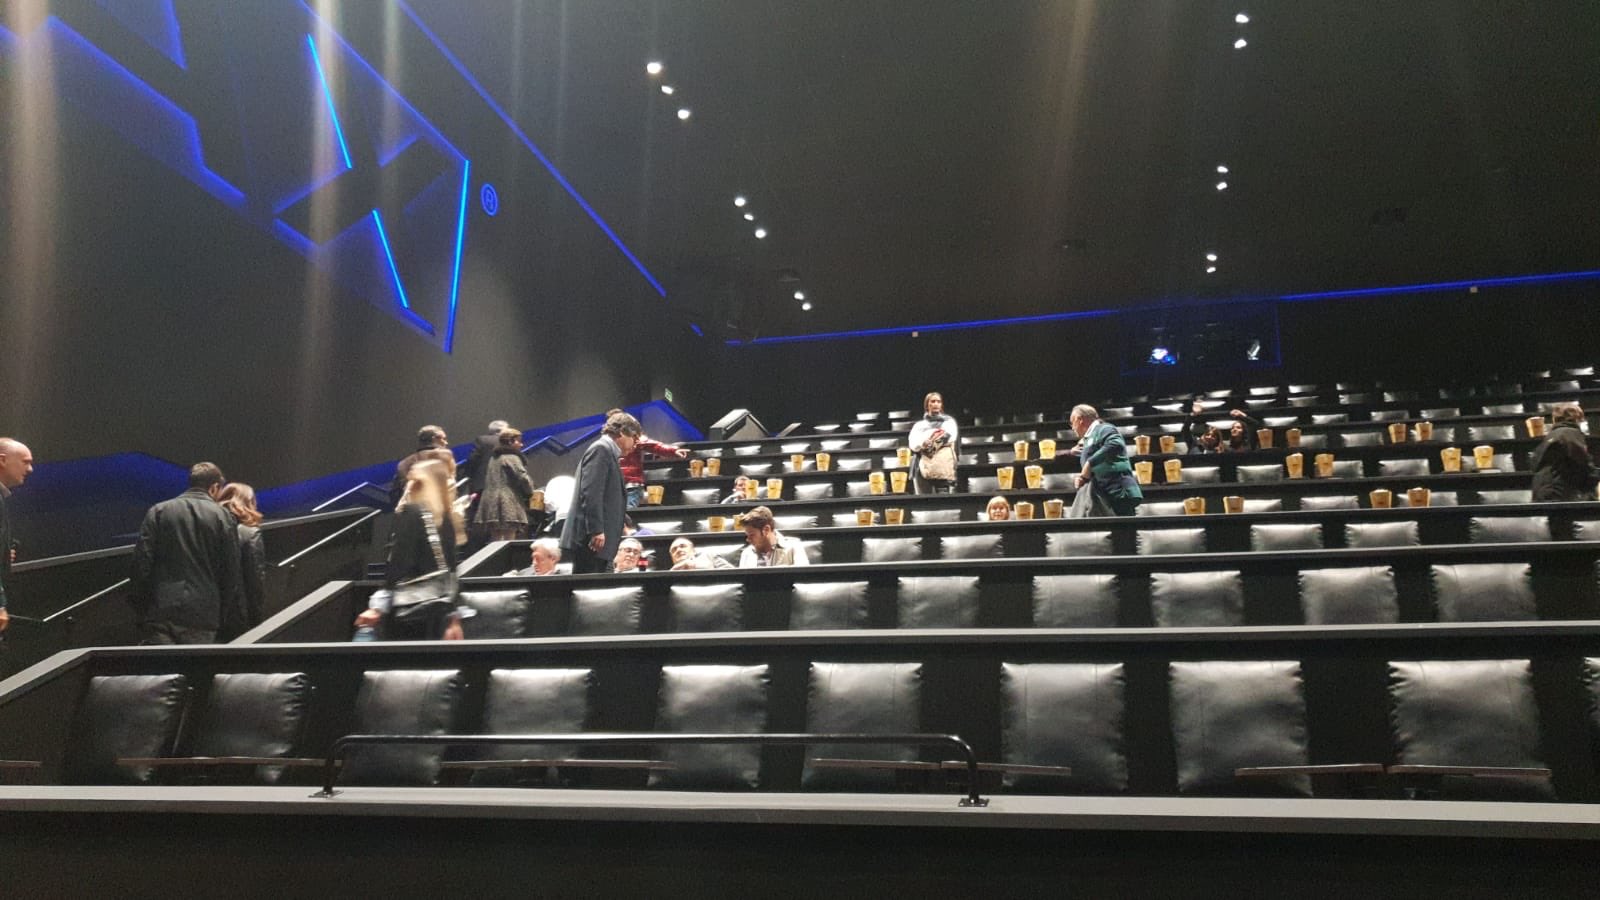 Firmar Aire acondicionado sanar Cinesa on Twitter: "Y para descubrir todas las ventajas de la Sala @IMAX ,  proyectamos la película #BohemianRhapsody 👑 ¡Os esperamos en Cinesa Heron  City Las Rozas! https://t.co/VaWivWvrG0" / Twitter